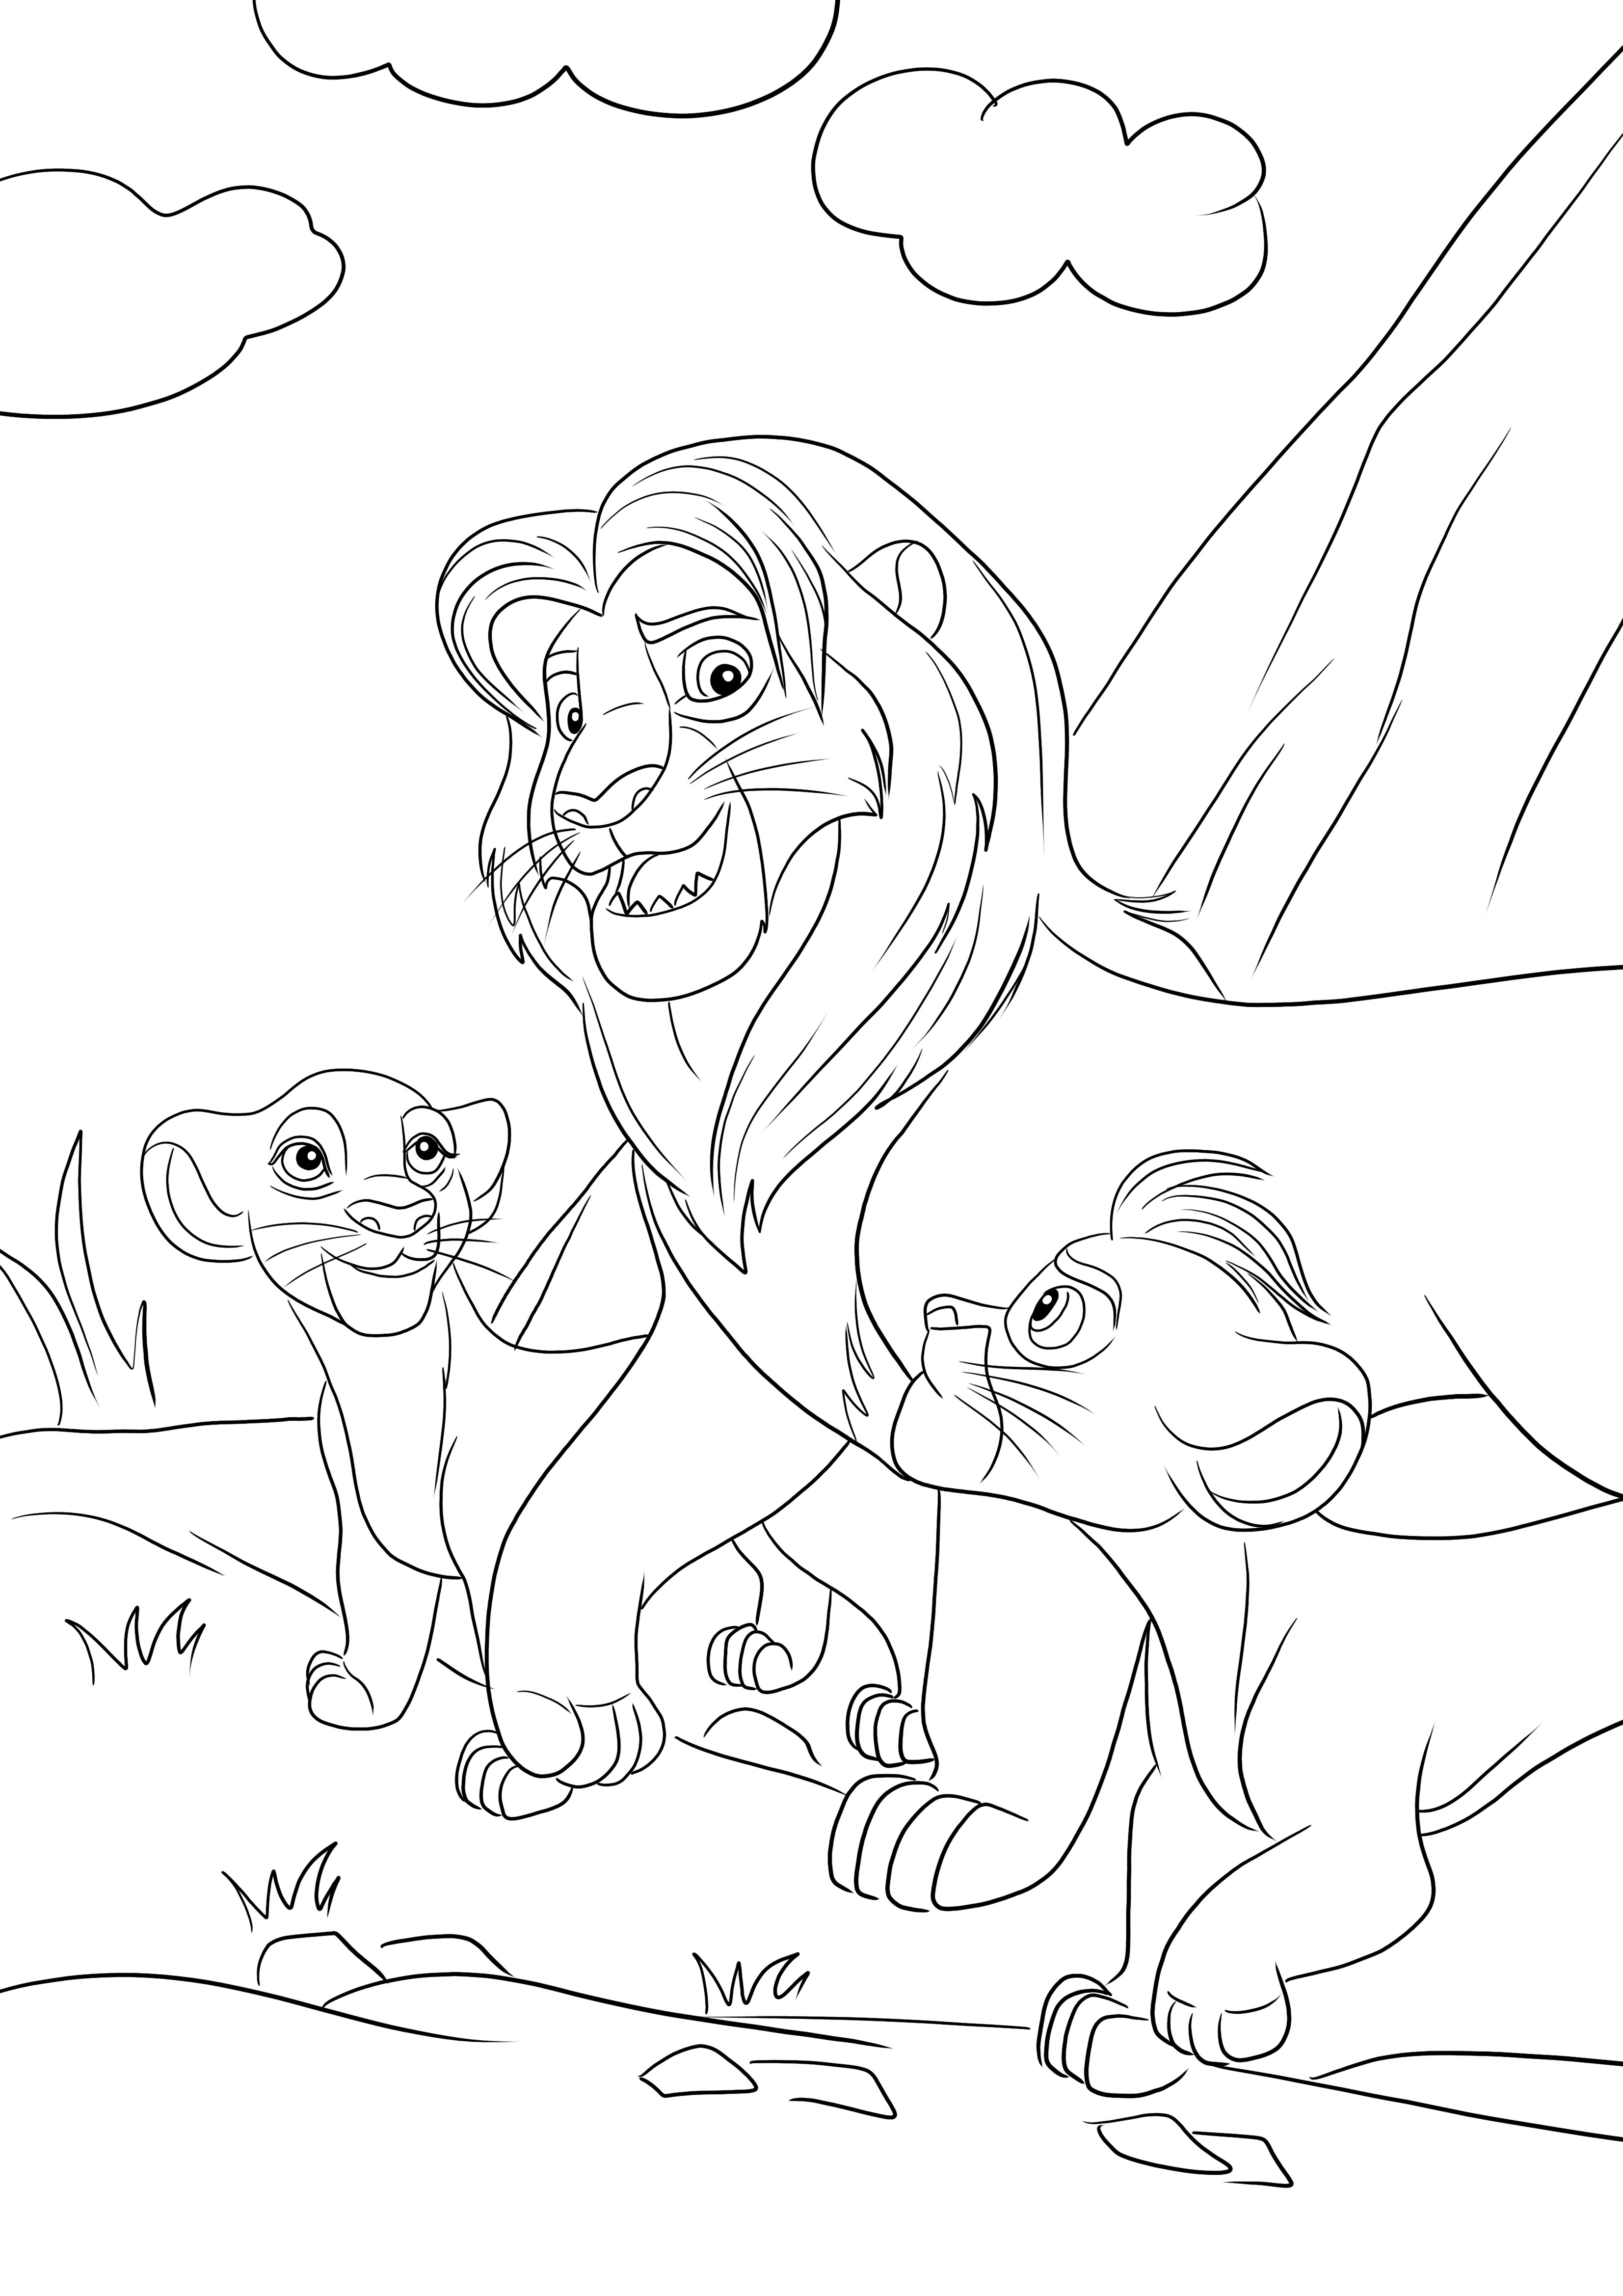 Simba és két fia – Kiara és Kion – ingyenes színezése letölthető és színezhető